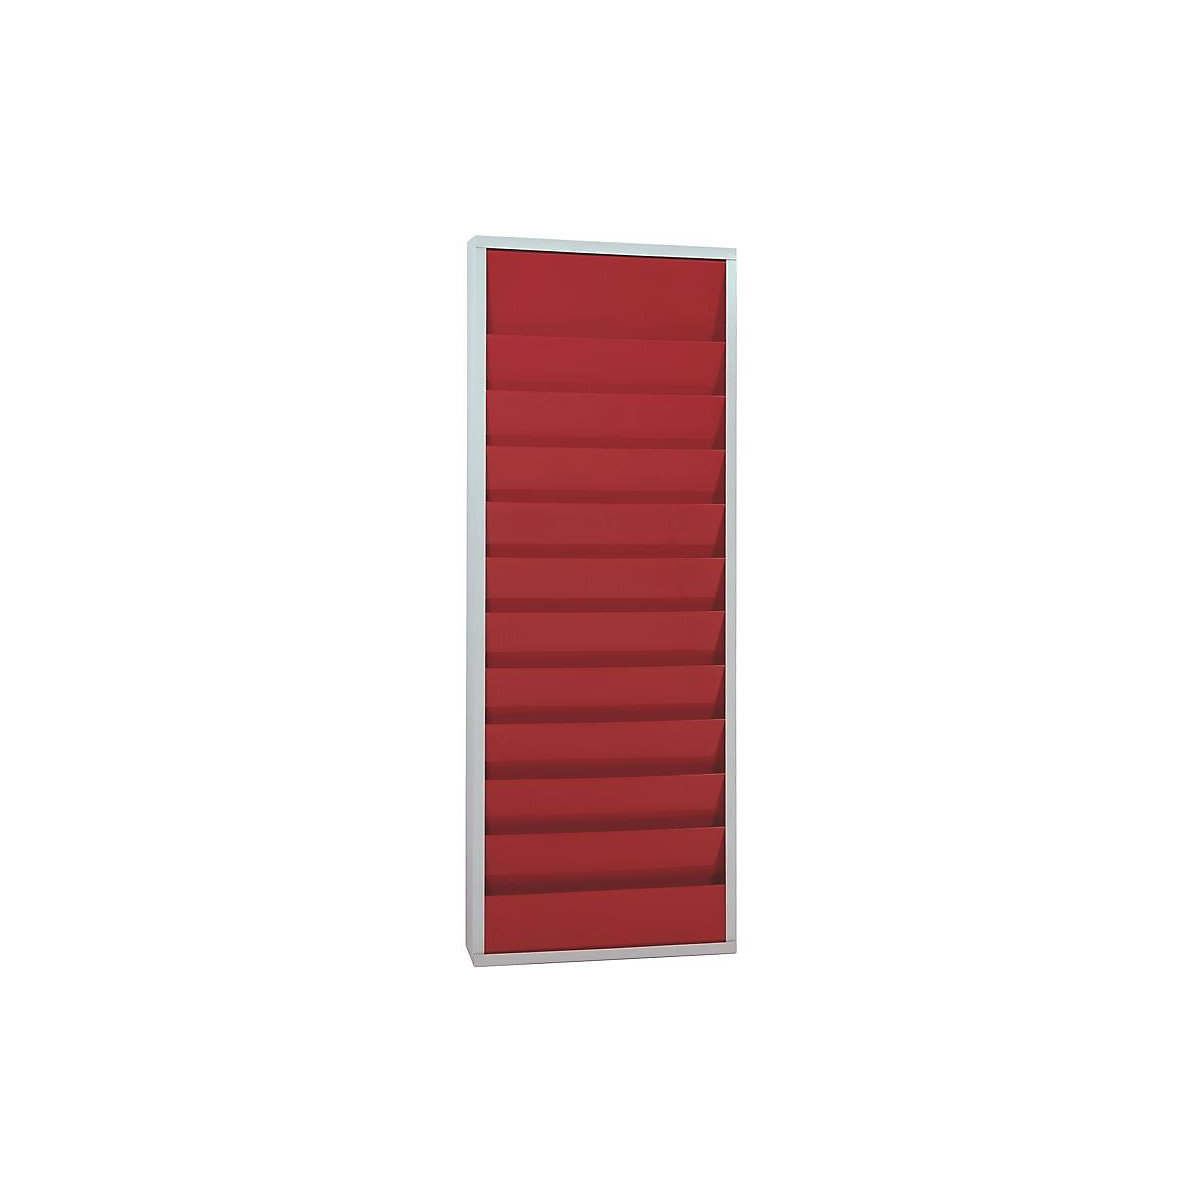 Planbord, met 10 rails – EICHNER, dubbele rij, h x b x d = 1280 x 554 x 74 mm, rood-4